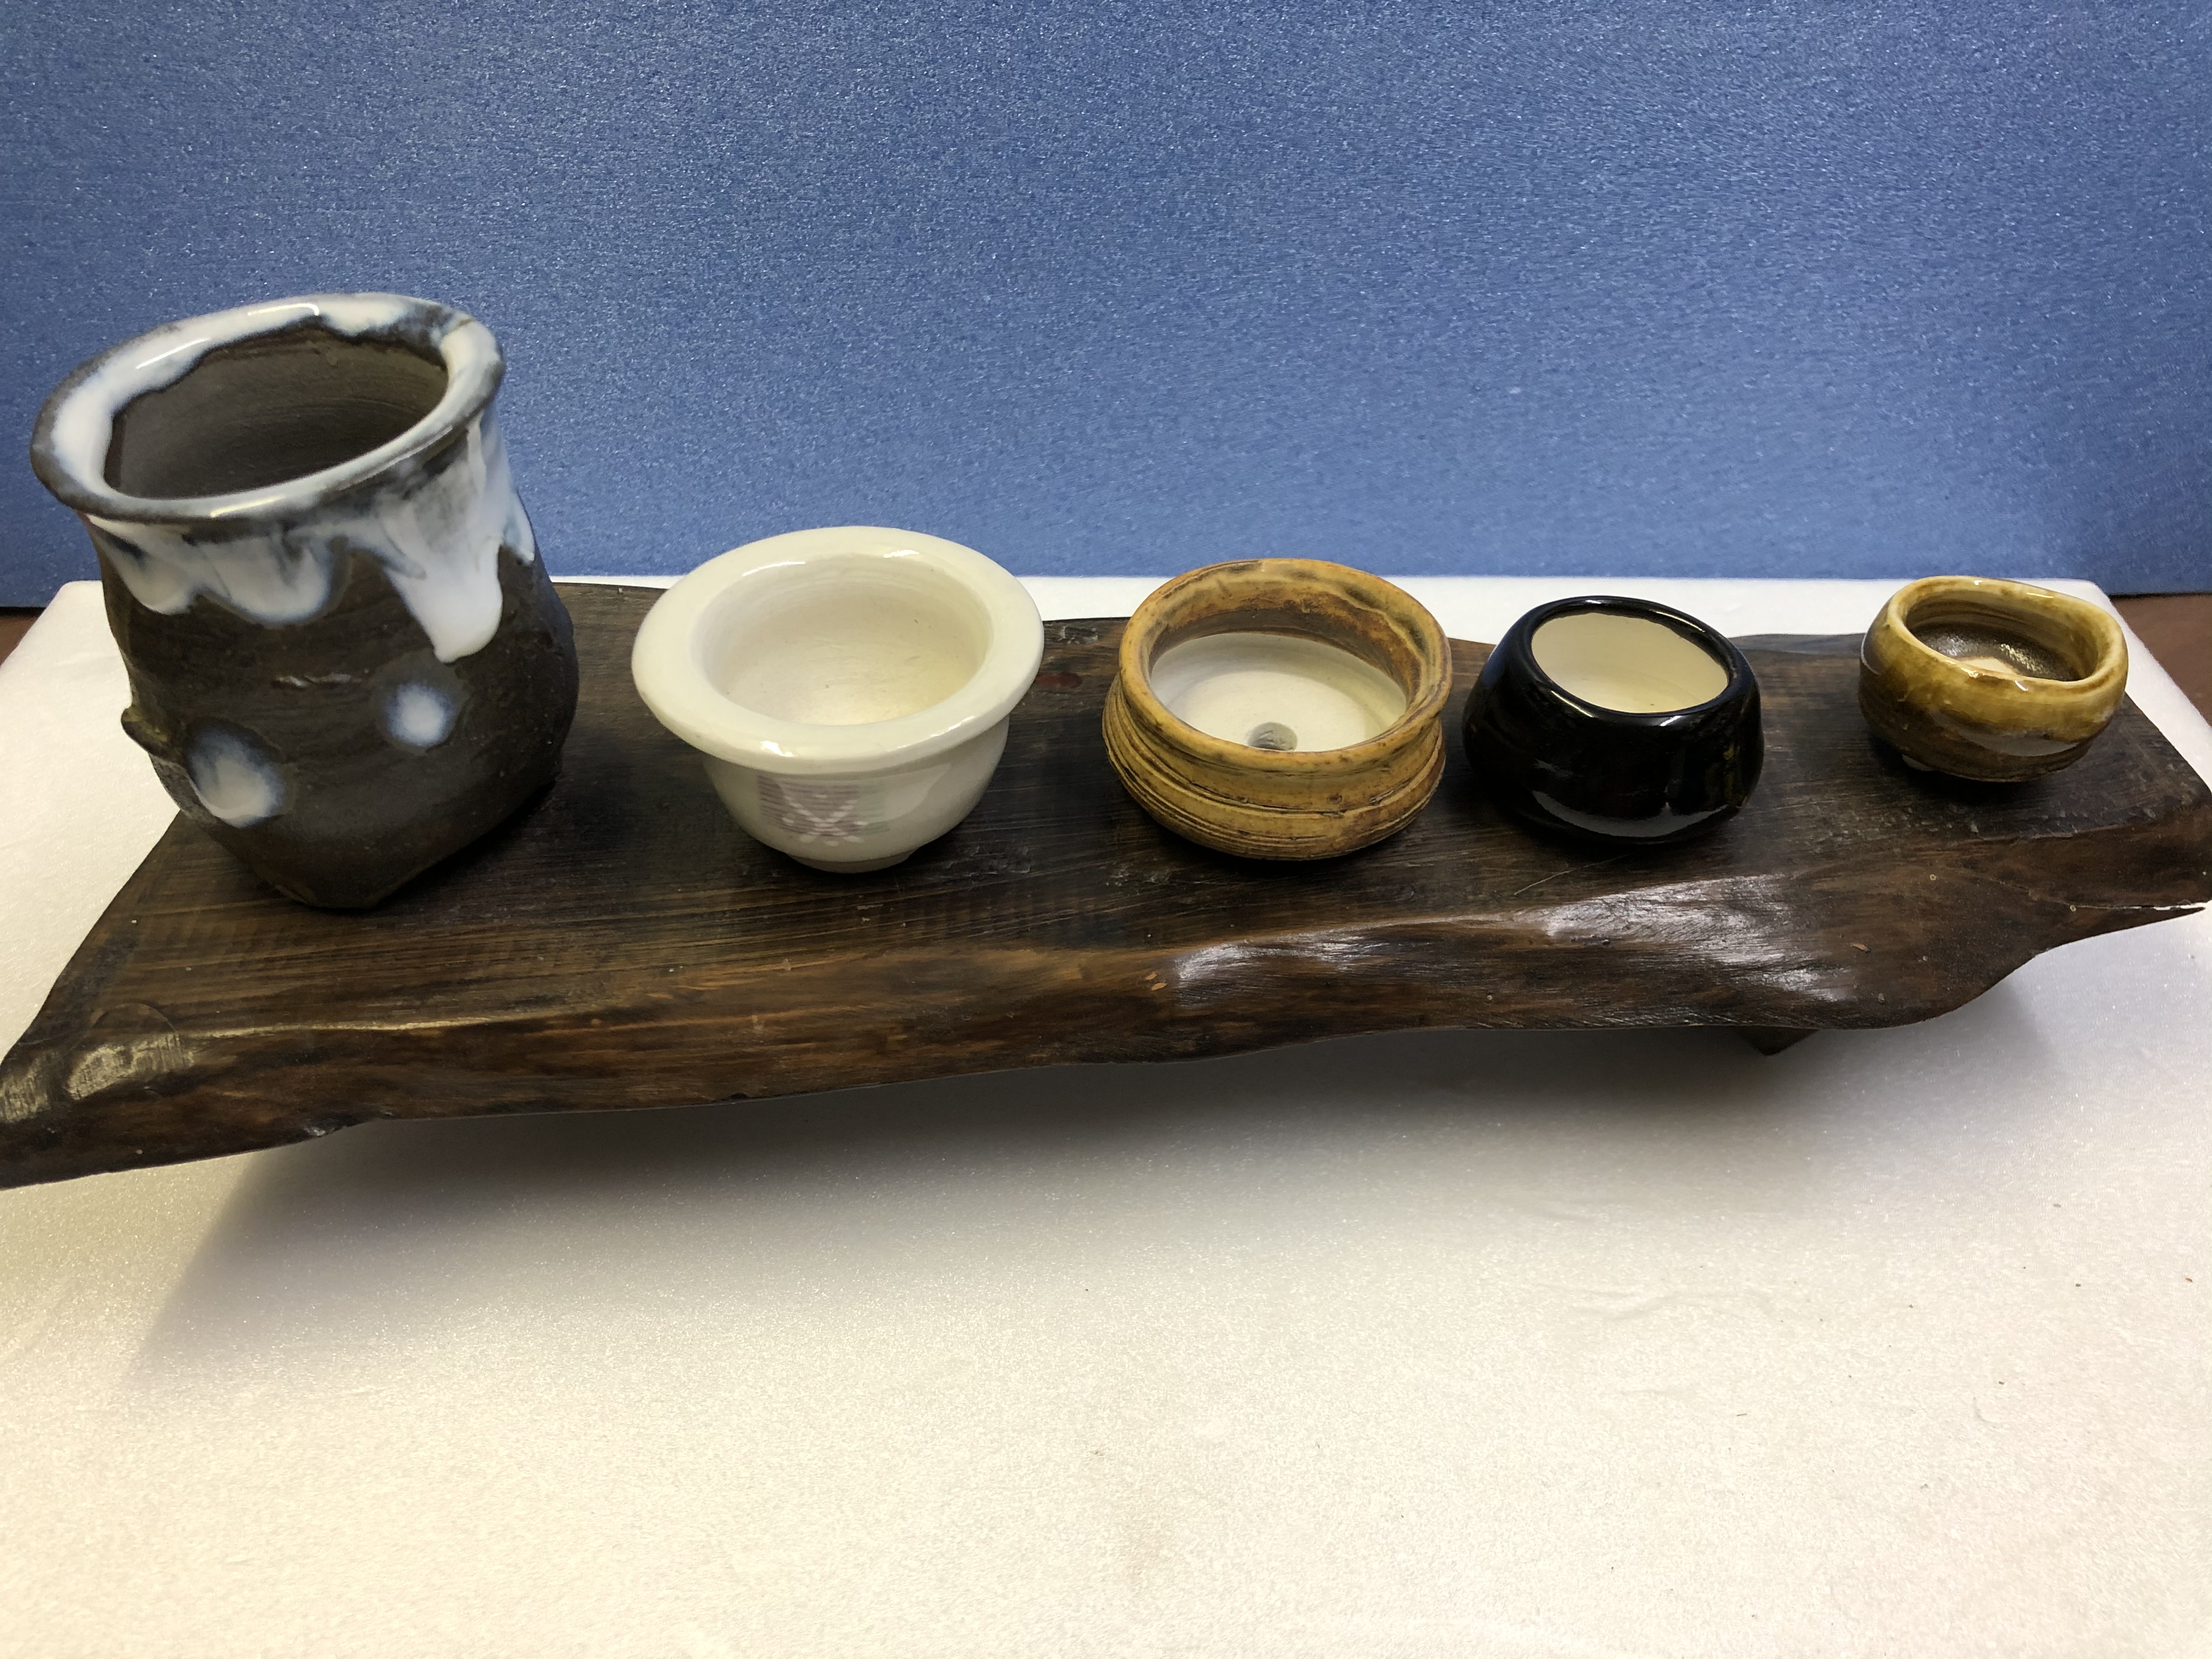 ミニ盆栽鉢(5個セット) | iichi ハンドメイド・クラフト作品・手仕事品 